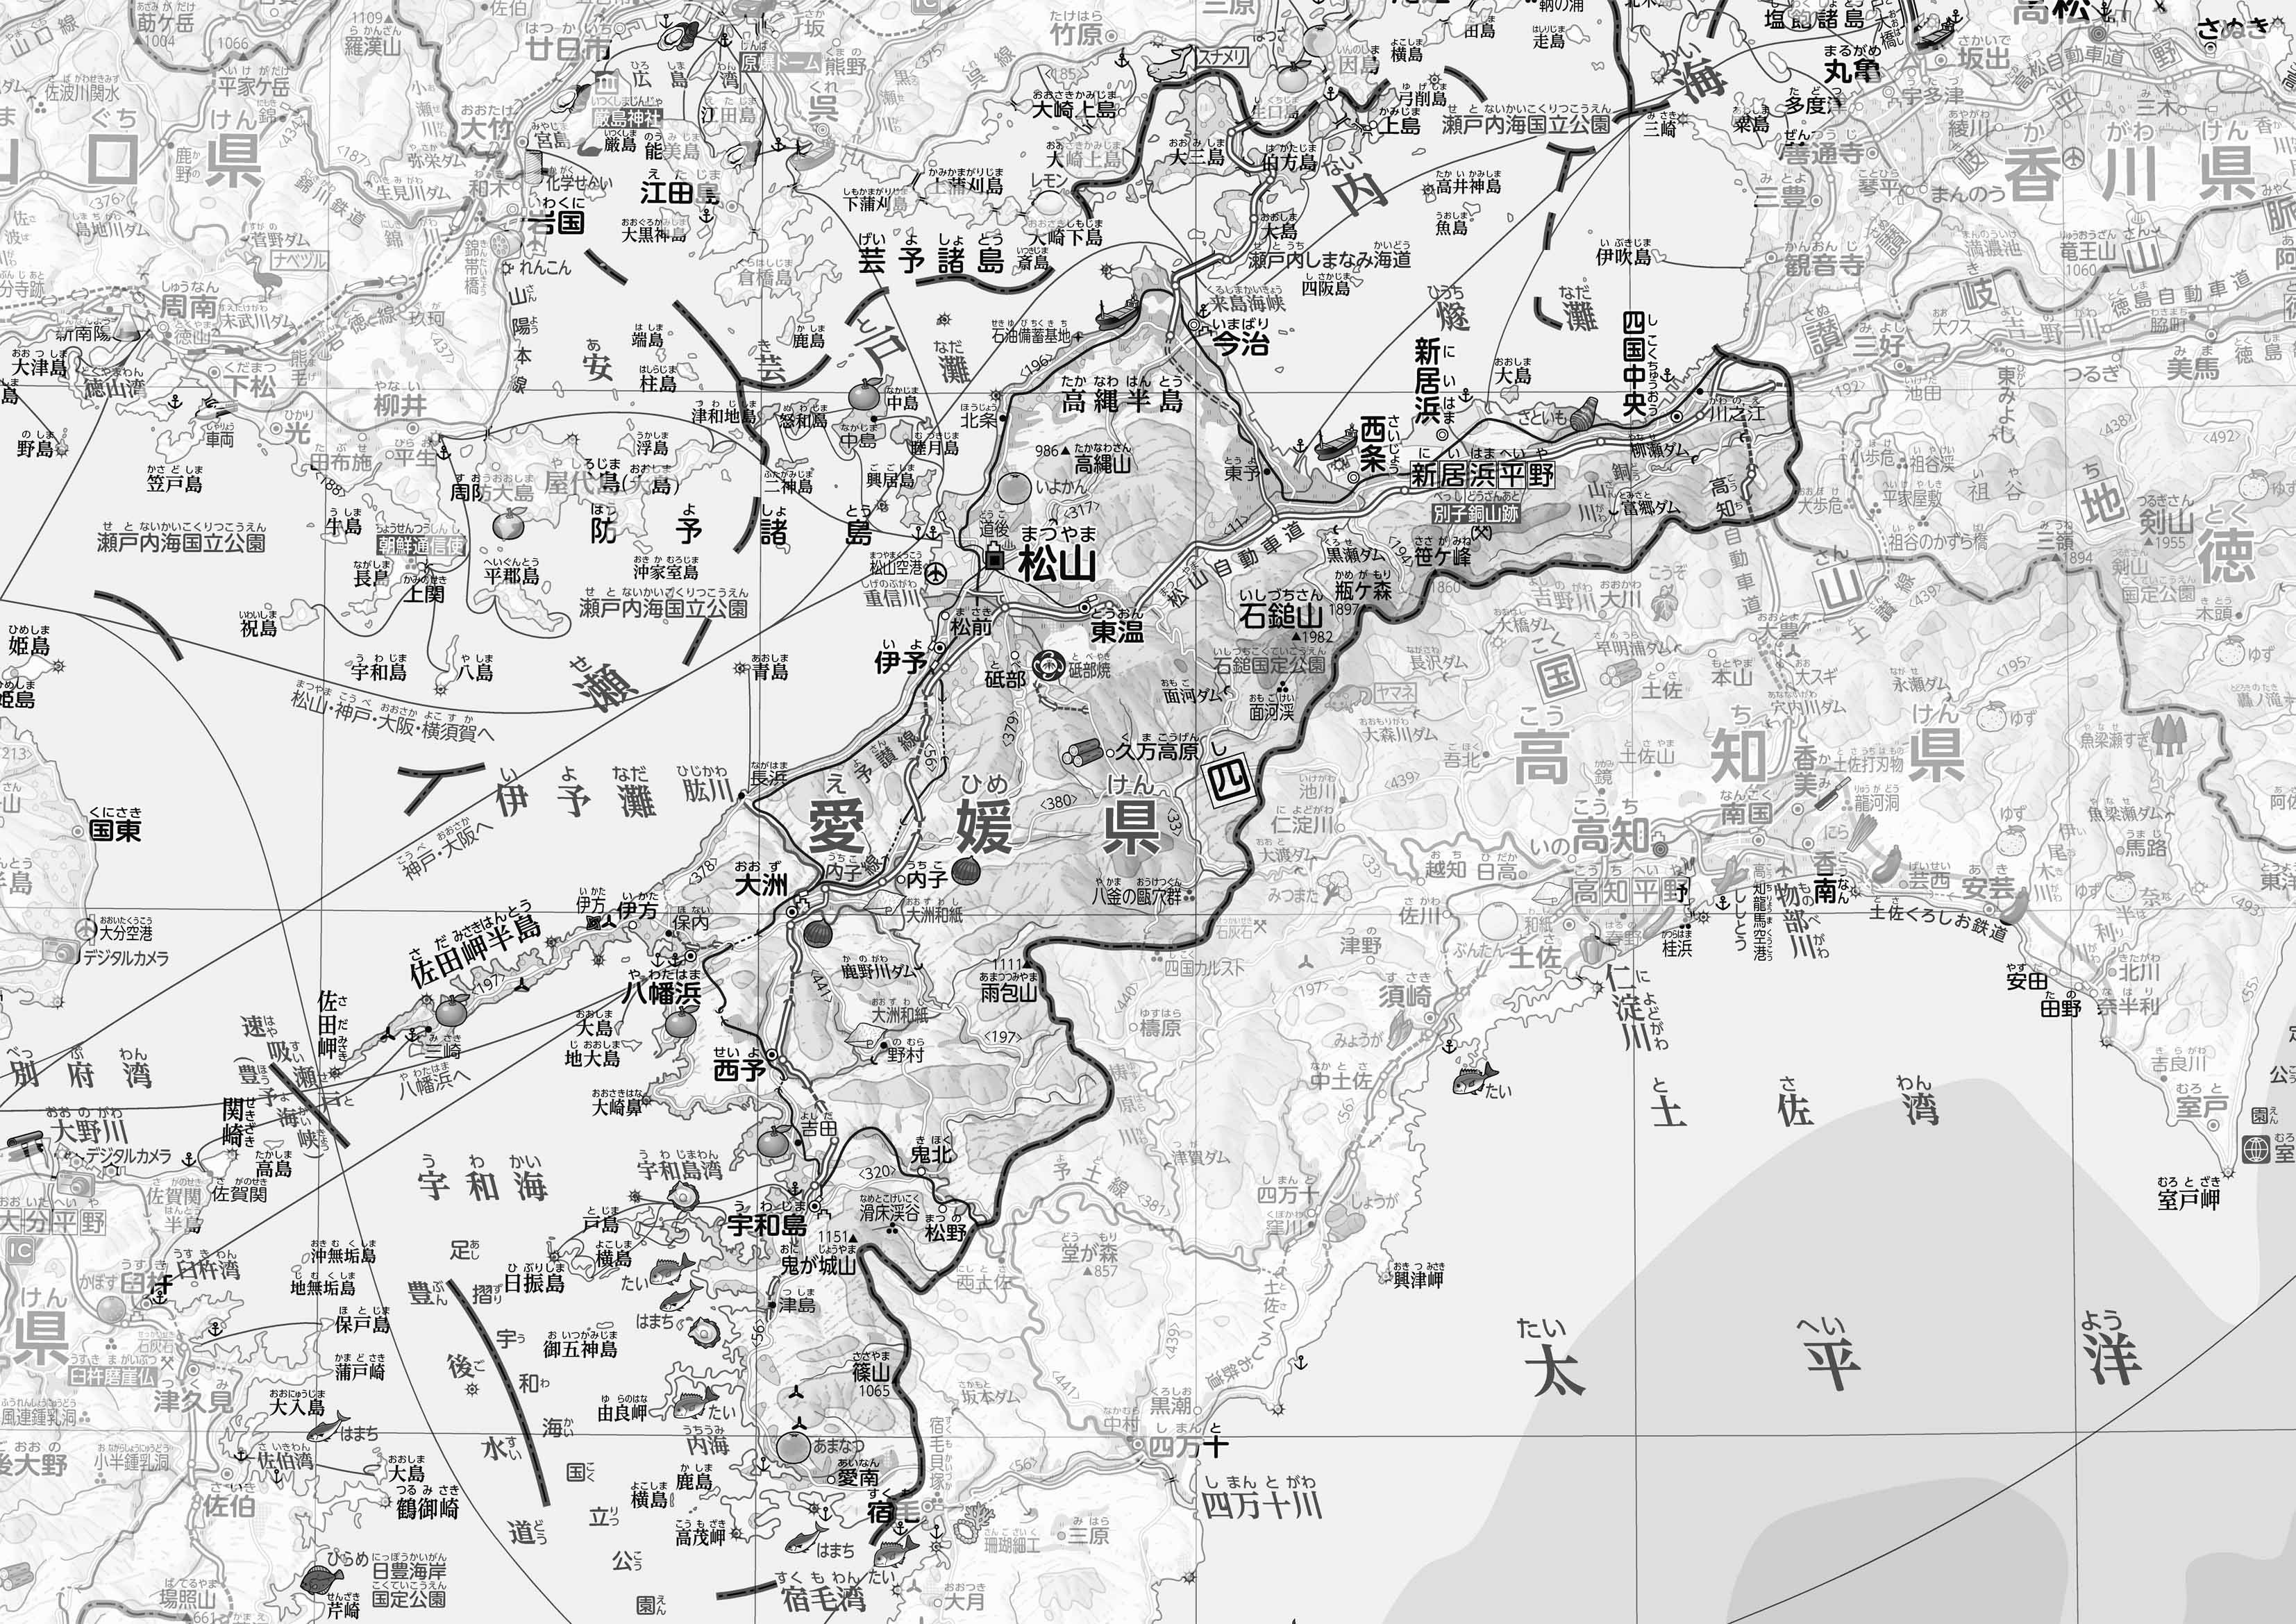 愛媛県土地利用規制現況図 地図10枚組 昭和49年 愛媛県 1974 函入り 地図 マップ